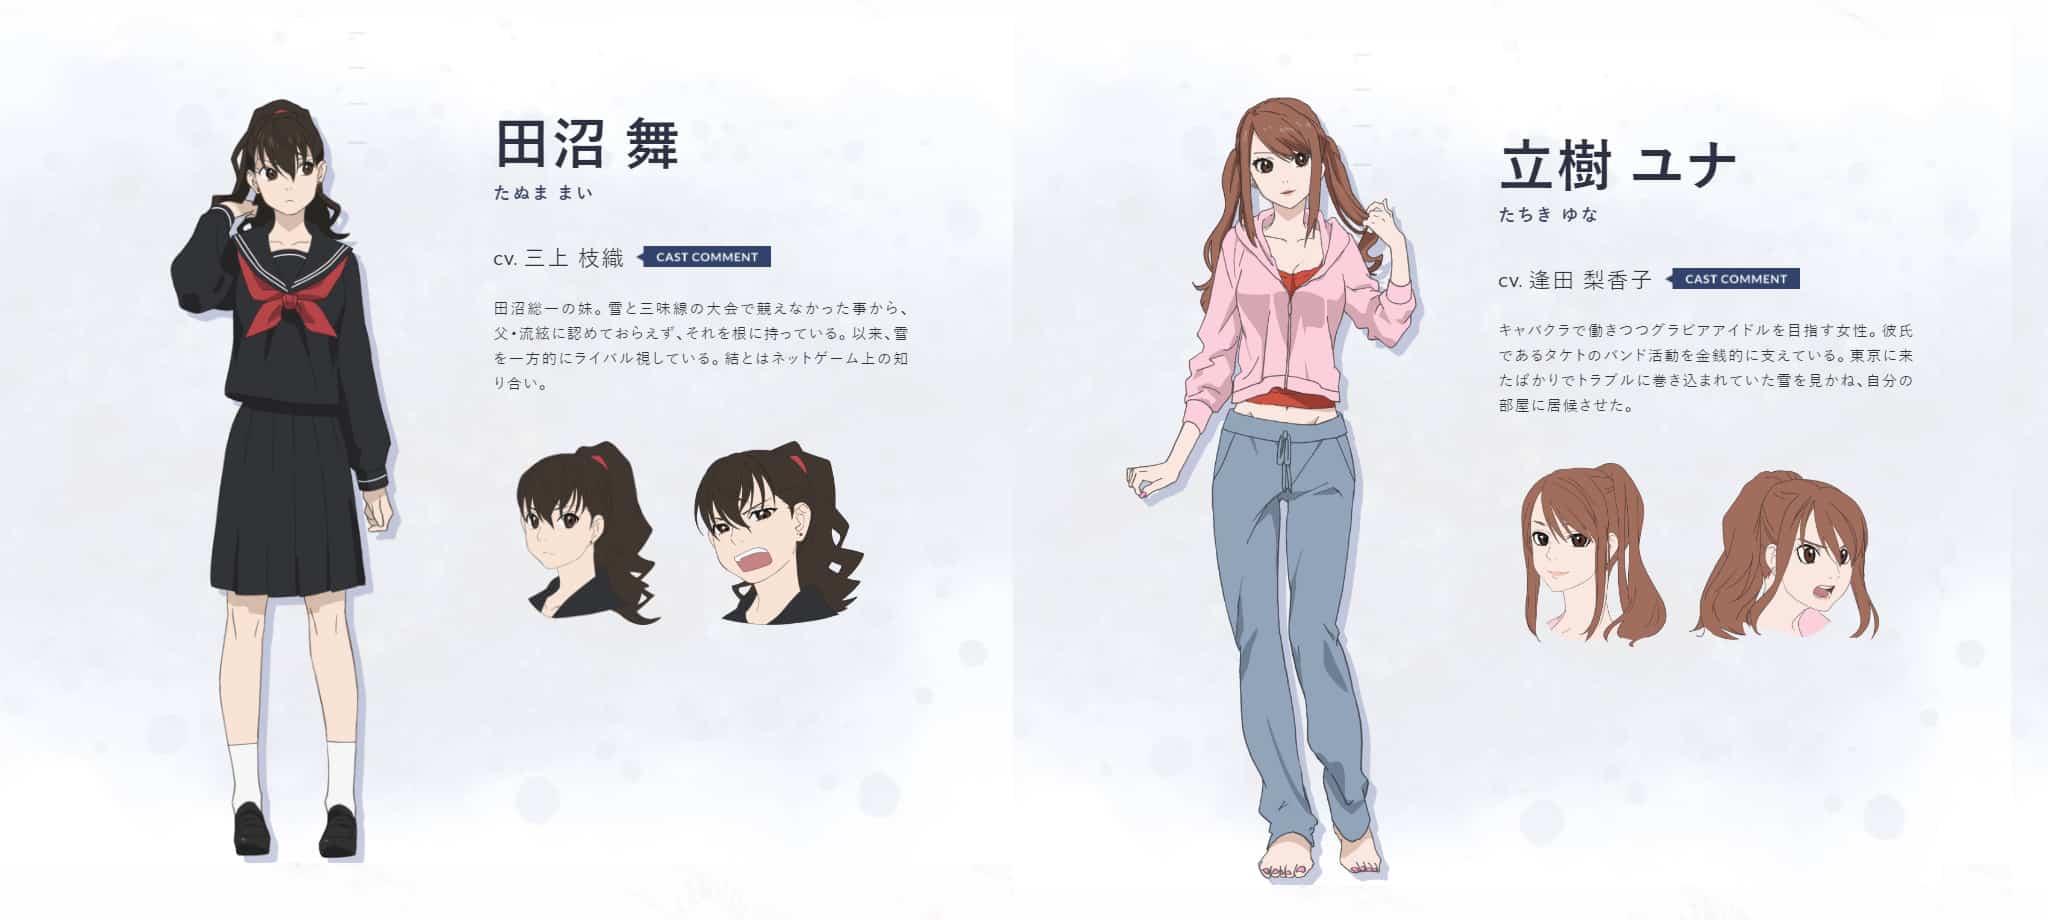 Chara Design de Tanuma Mei et Tachiki Yuna pour anime Mashiro no Oto